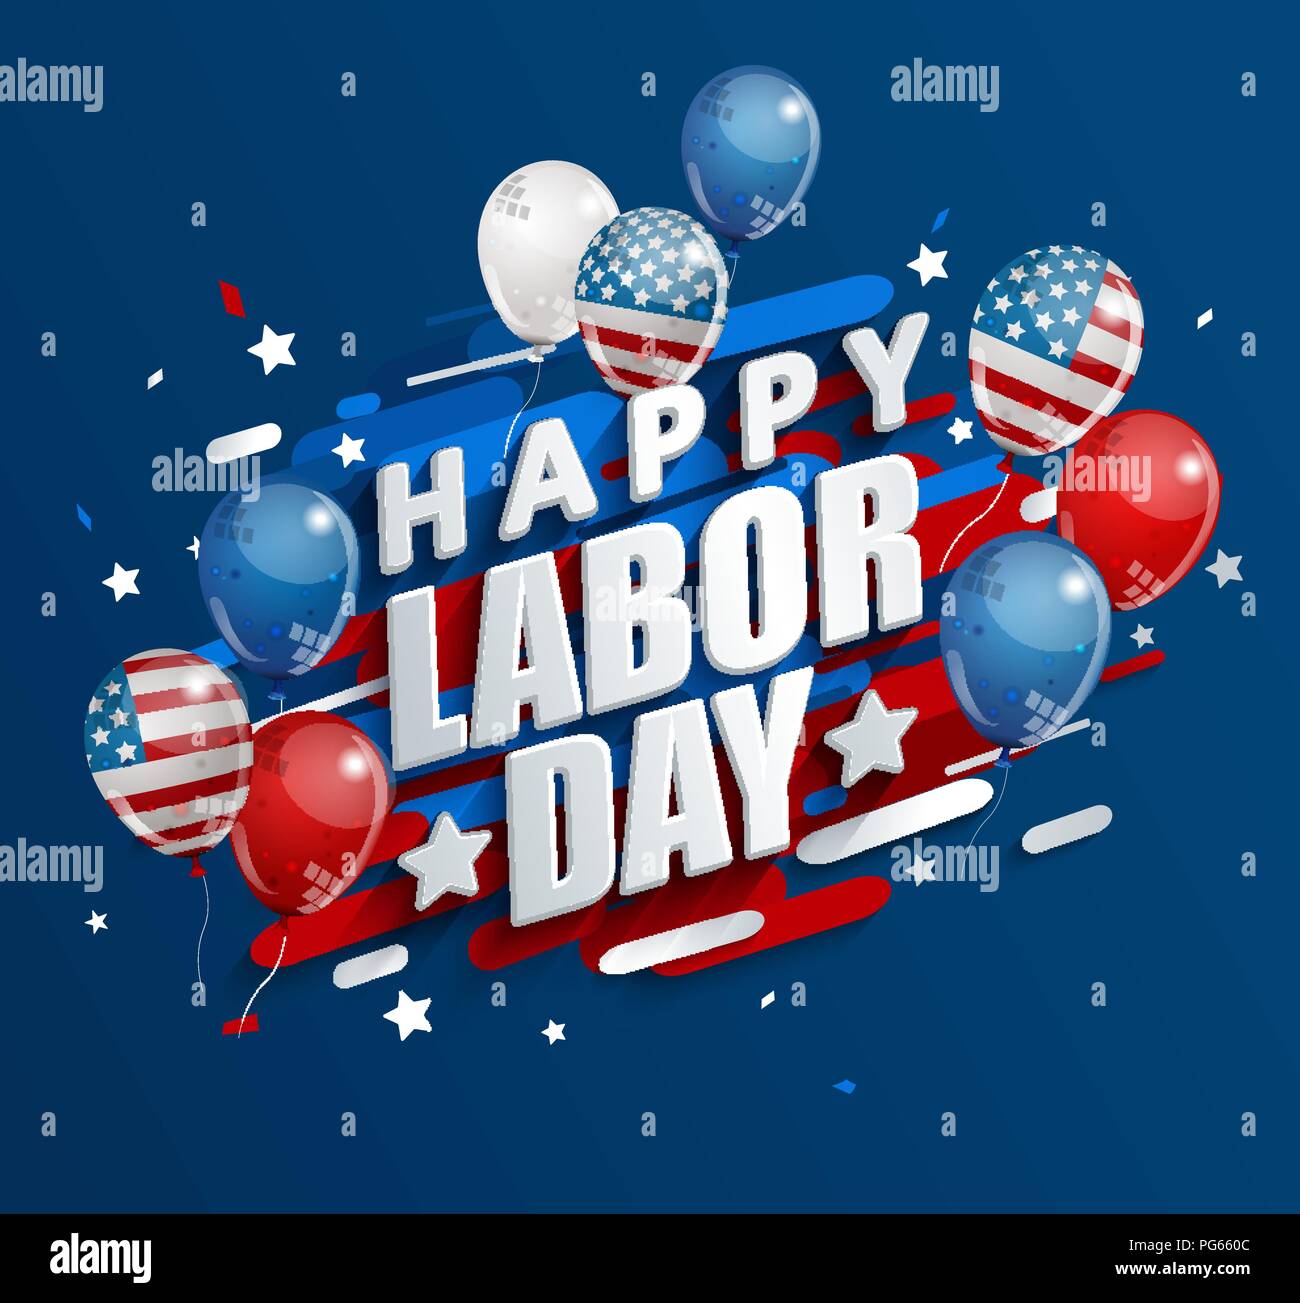 Happy Labor Day holiday banner con ballons in Stati Uniti bandiera nazionale di colori. Illustrazione Vettoriale. Illustrazione Vettoriale